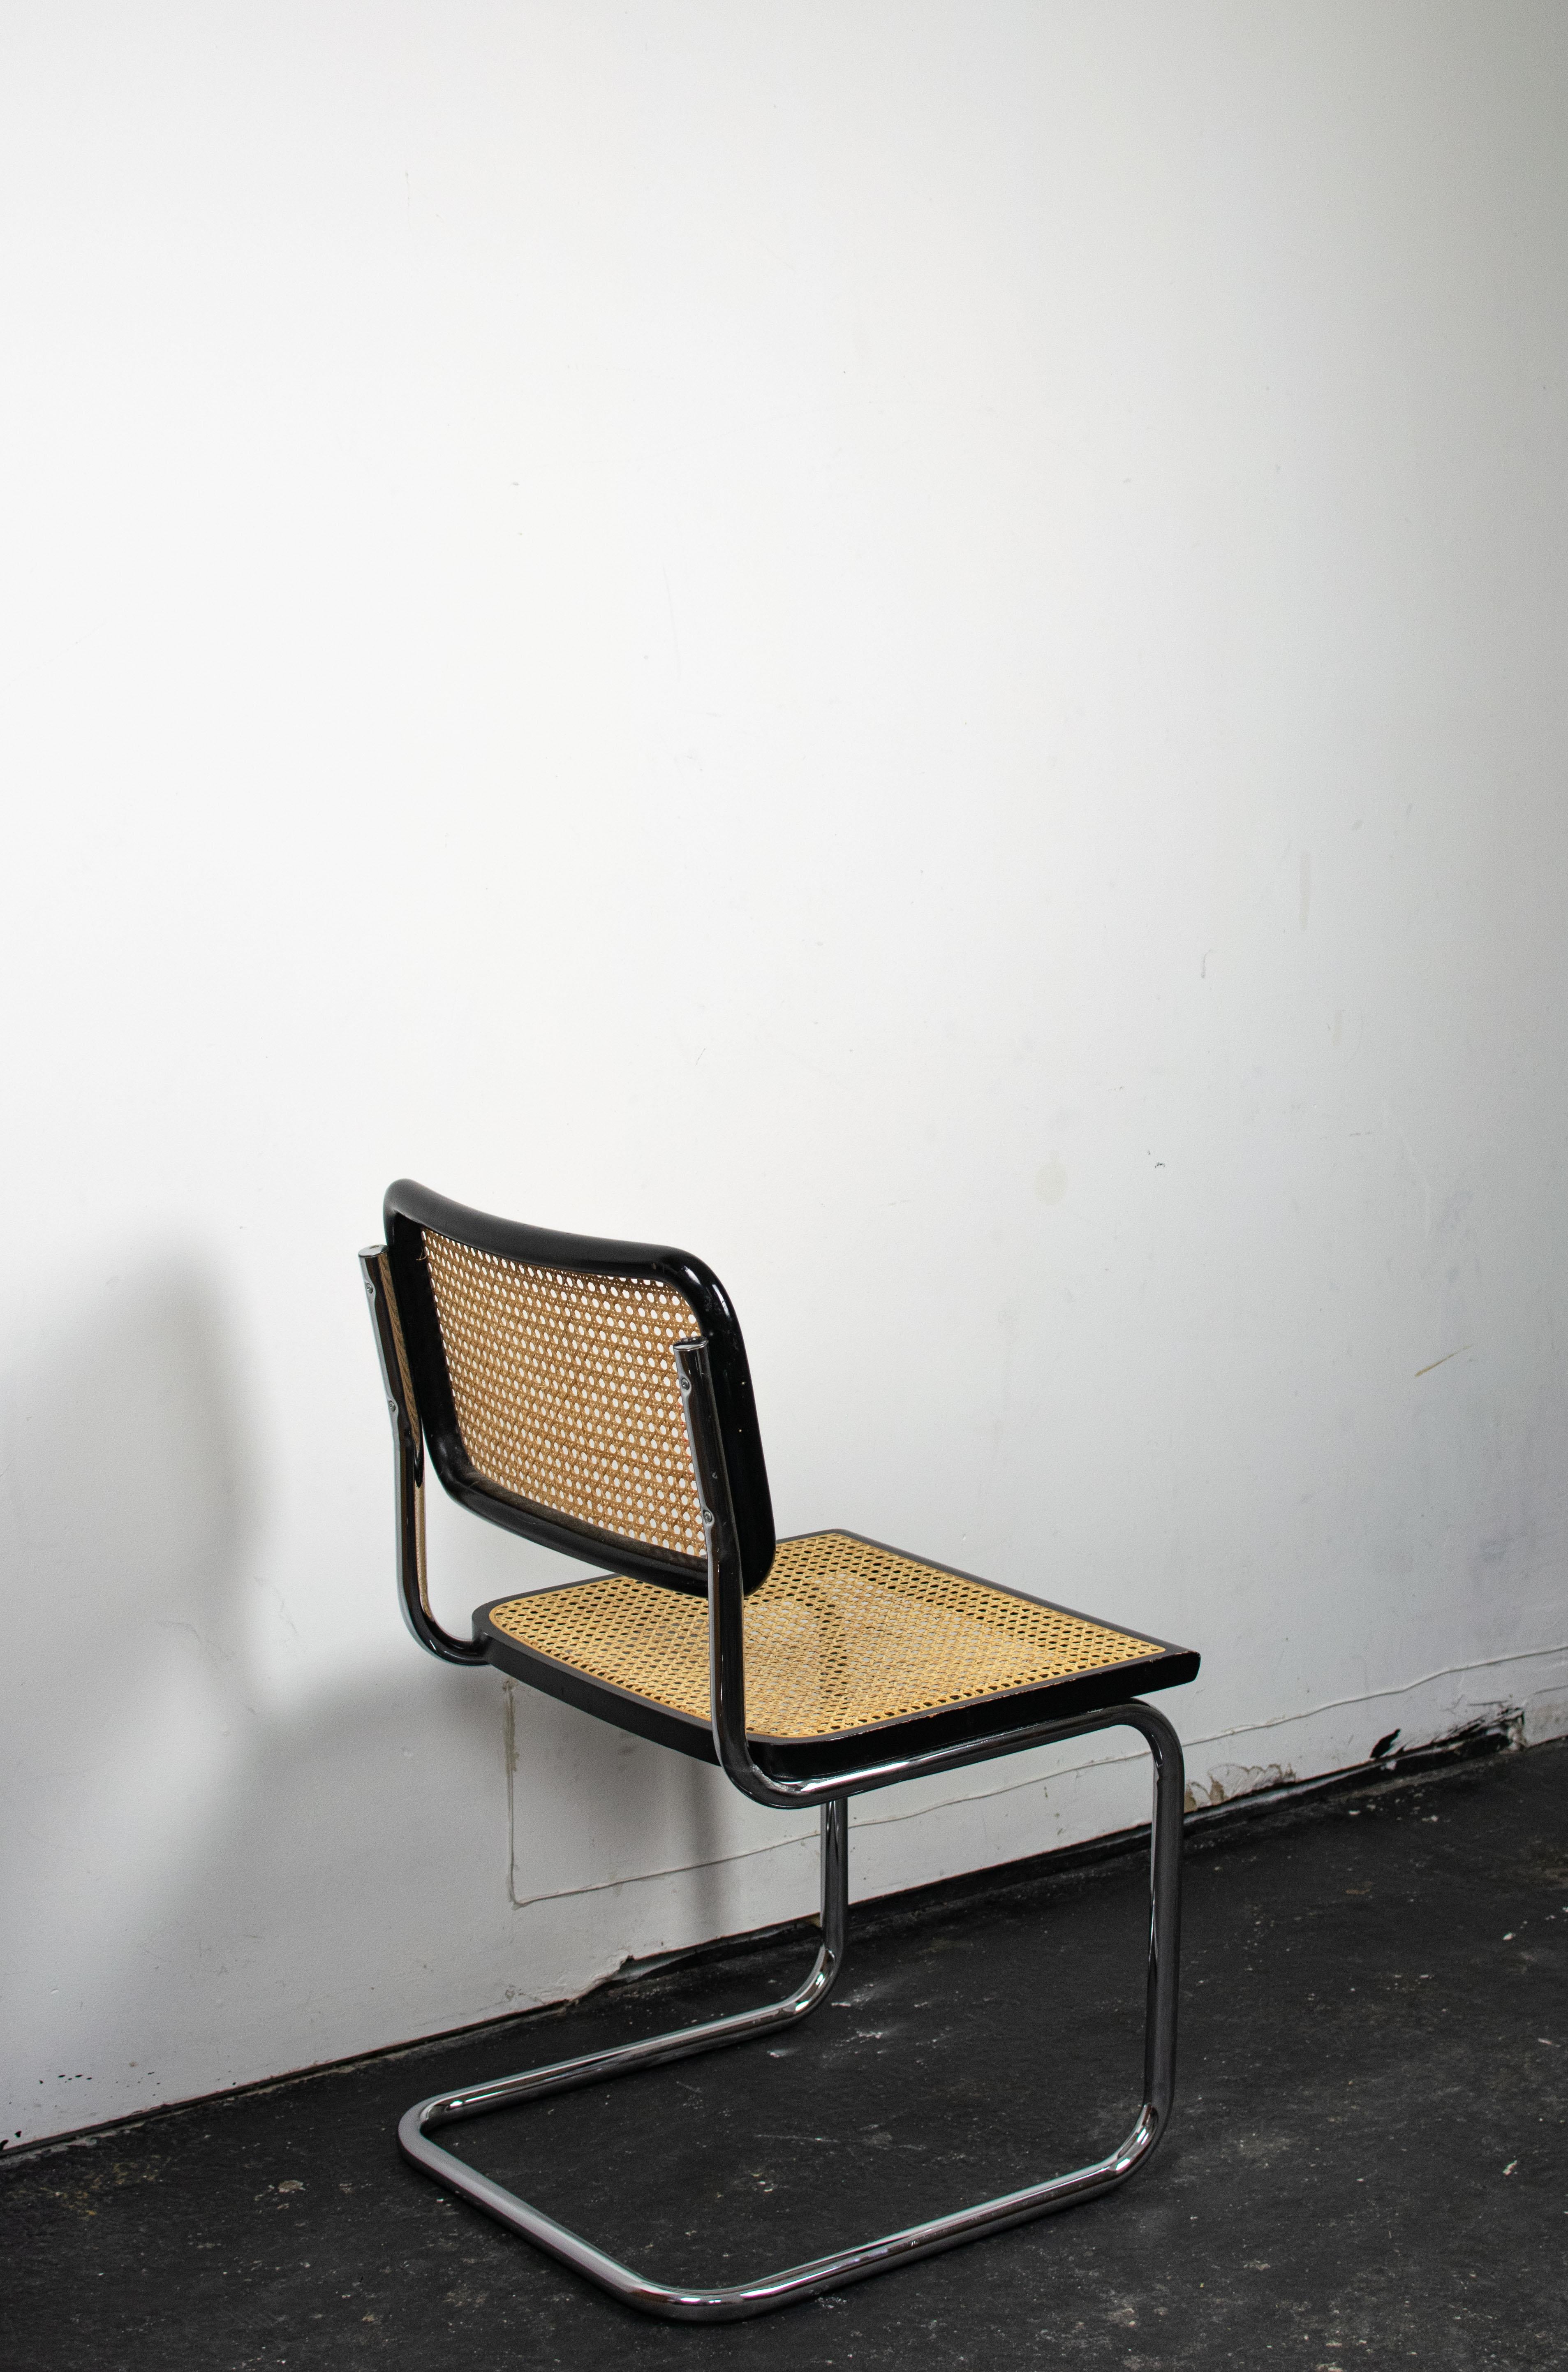 Cette chaise Cesca B32 par Marcel Breuer a été édité dans les années 1970. Cette édition présente une structure en acier chromé, un cadre en hêtre massif vernis noir avec un dossier et une assise en cannage.
En créant les chaises Cesca, Marcel